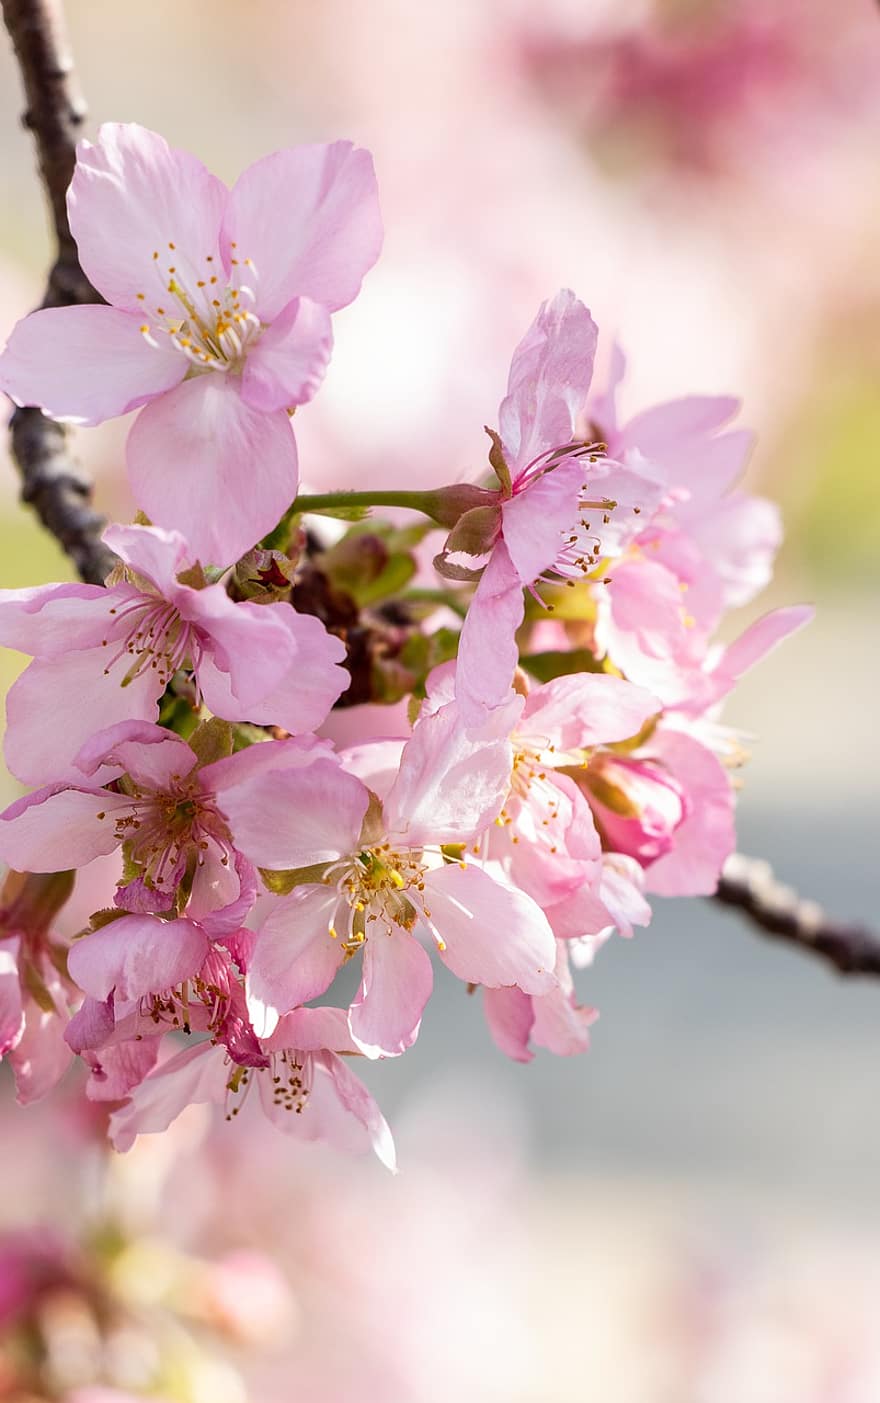 fiore di ciliegio, fiori, ramo, fiori rosa, petali, fioritura, fiorire, sakura, primavera, albero, naturale